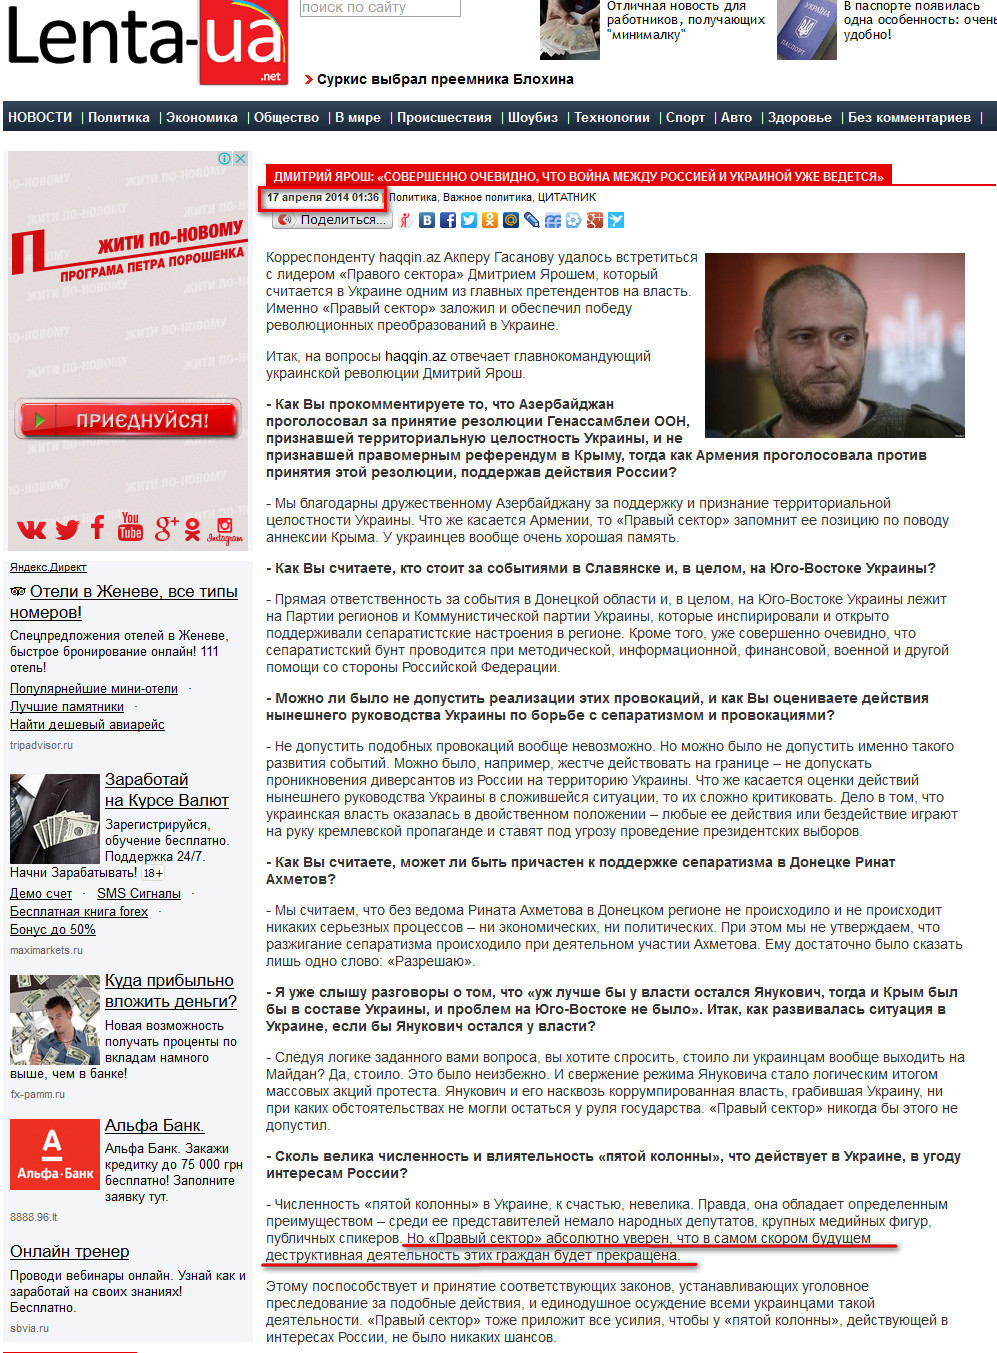 http://lenta-ua.net/novosti/politika/54882-dmitriy-yarosh-sovershenno-ochevidno-chto-voyna-mezhdu-rossiey-i-ukrainoy-uzhe-vedetsya.html